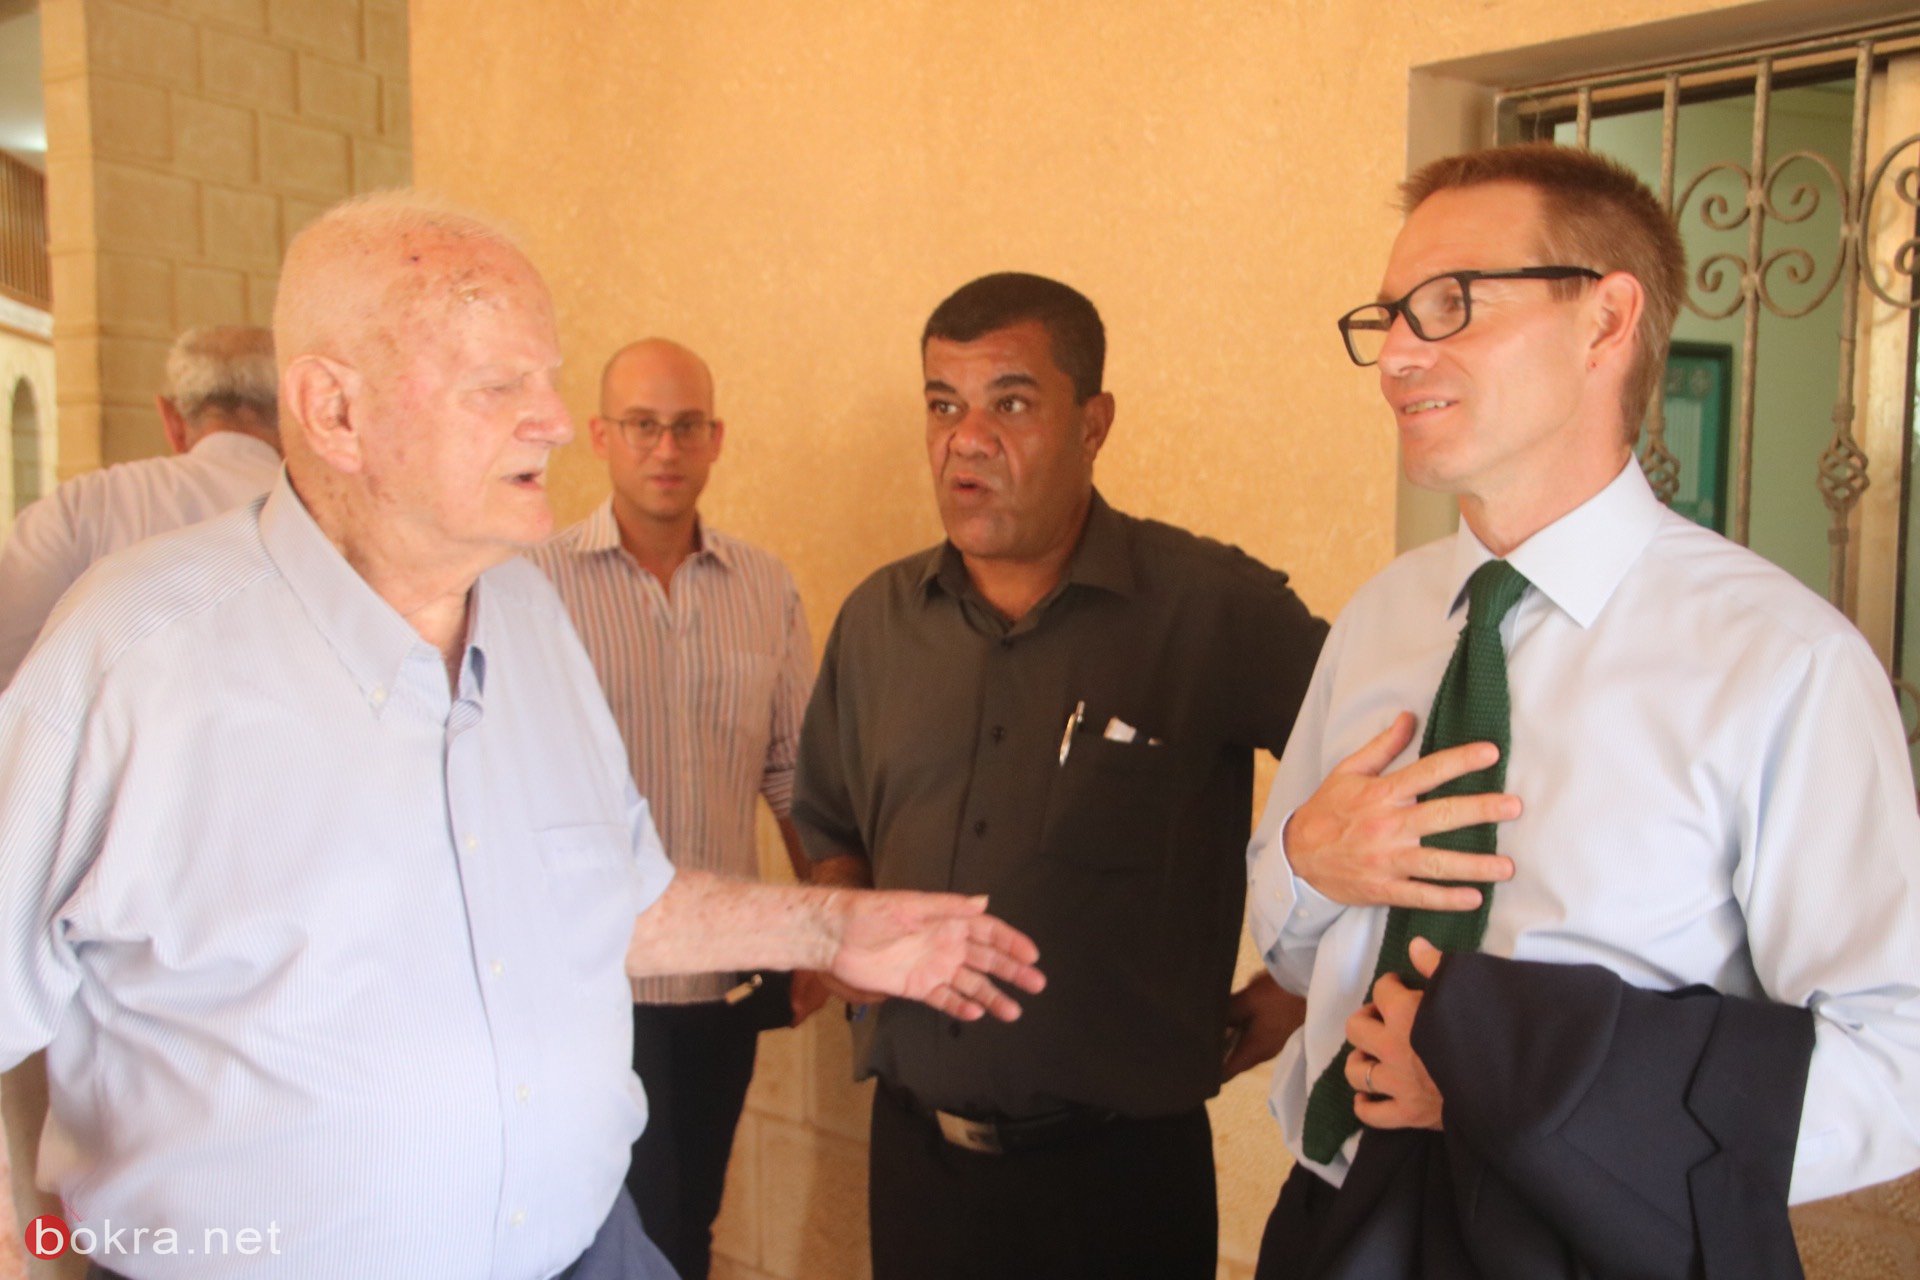 السفير البريطاني الجديد نيل ويچن يزور الناصرة وهذا ما قاله لـ"بُكرا"-18